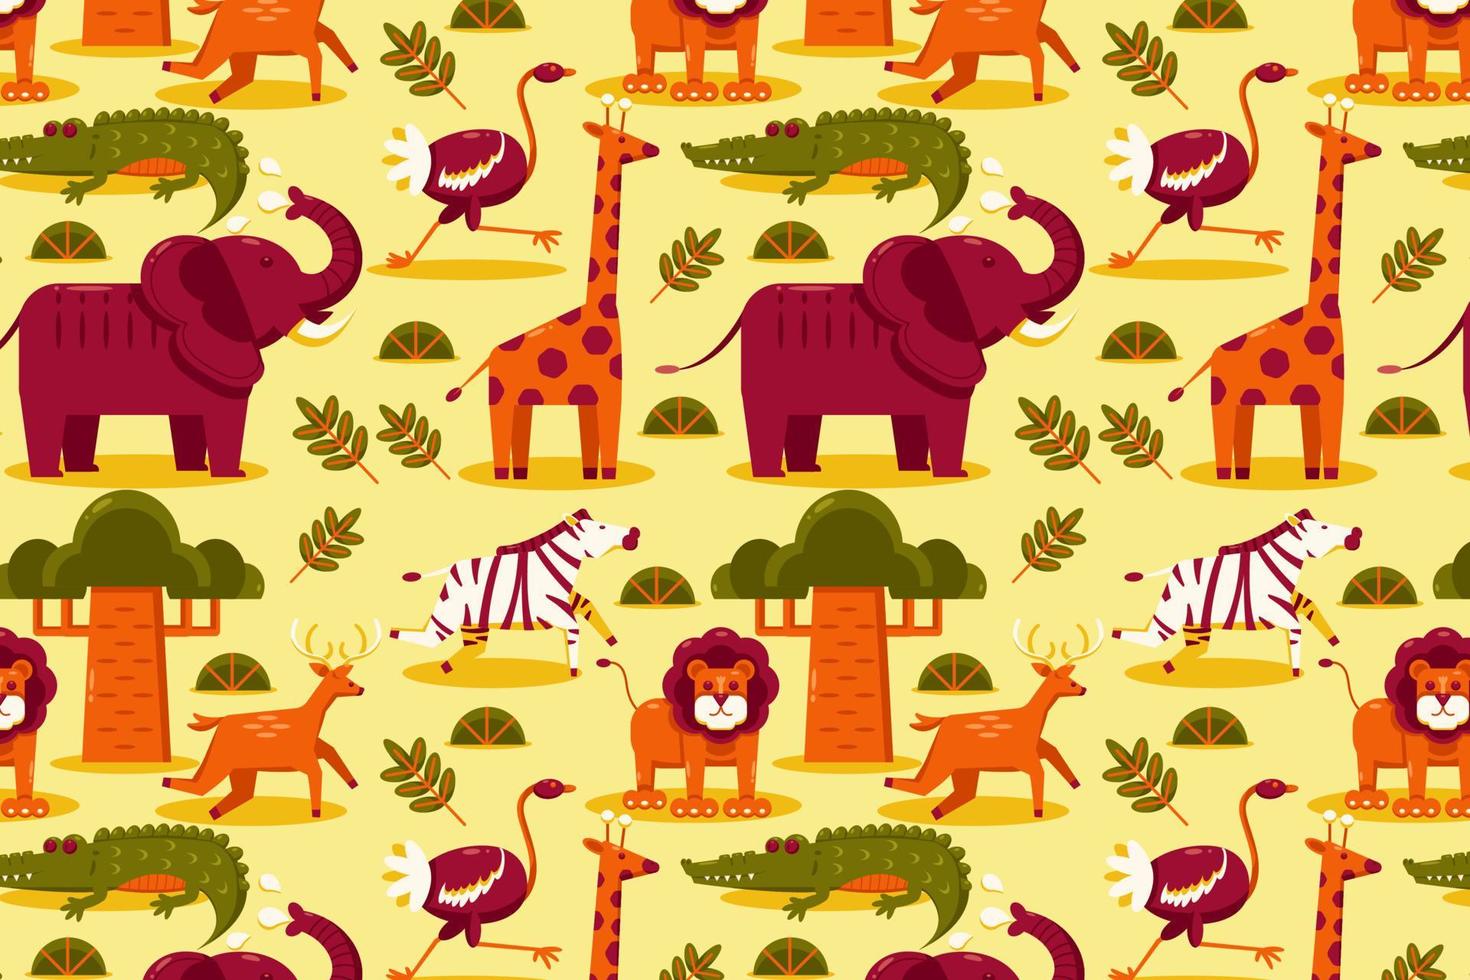 afrikansk djur. mönster av elefant, lejon, giraff, gasell, antilop, krokodil, struts, och zebra vektor